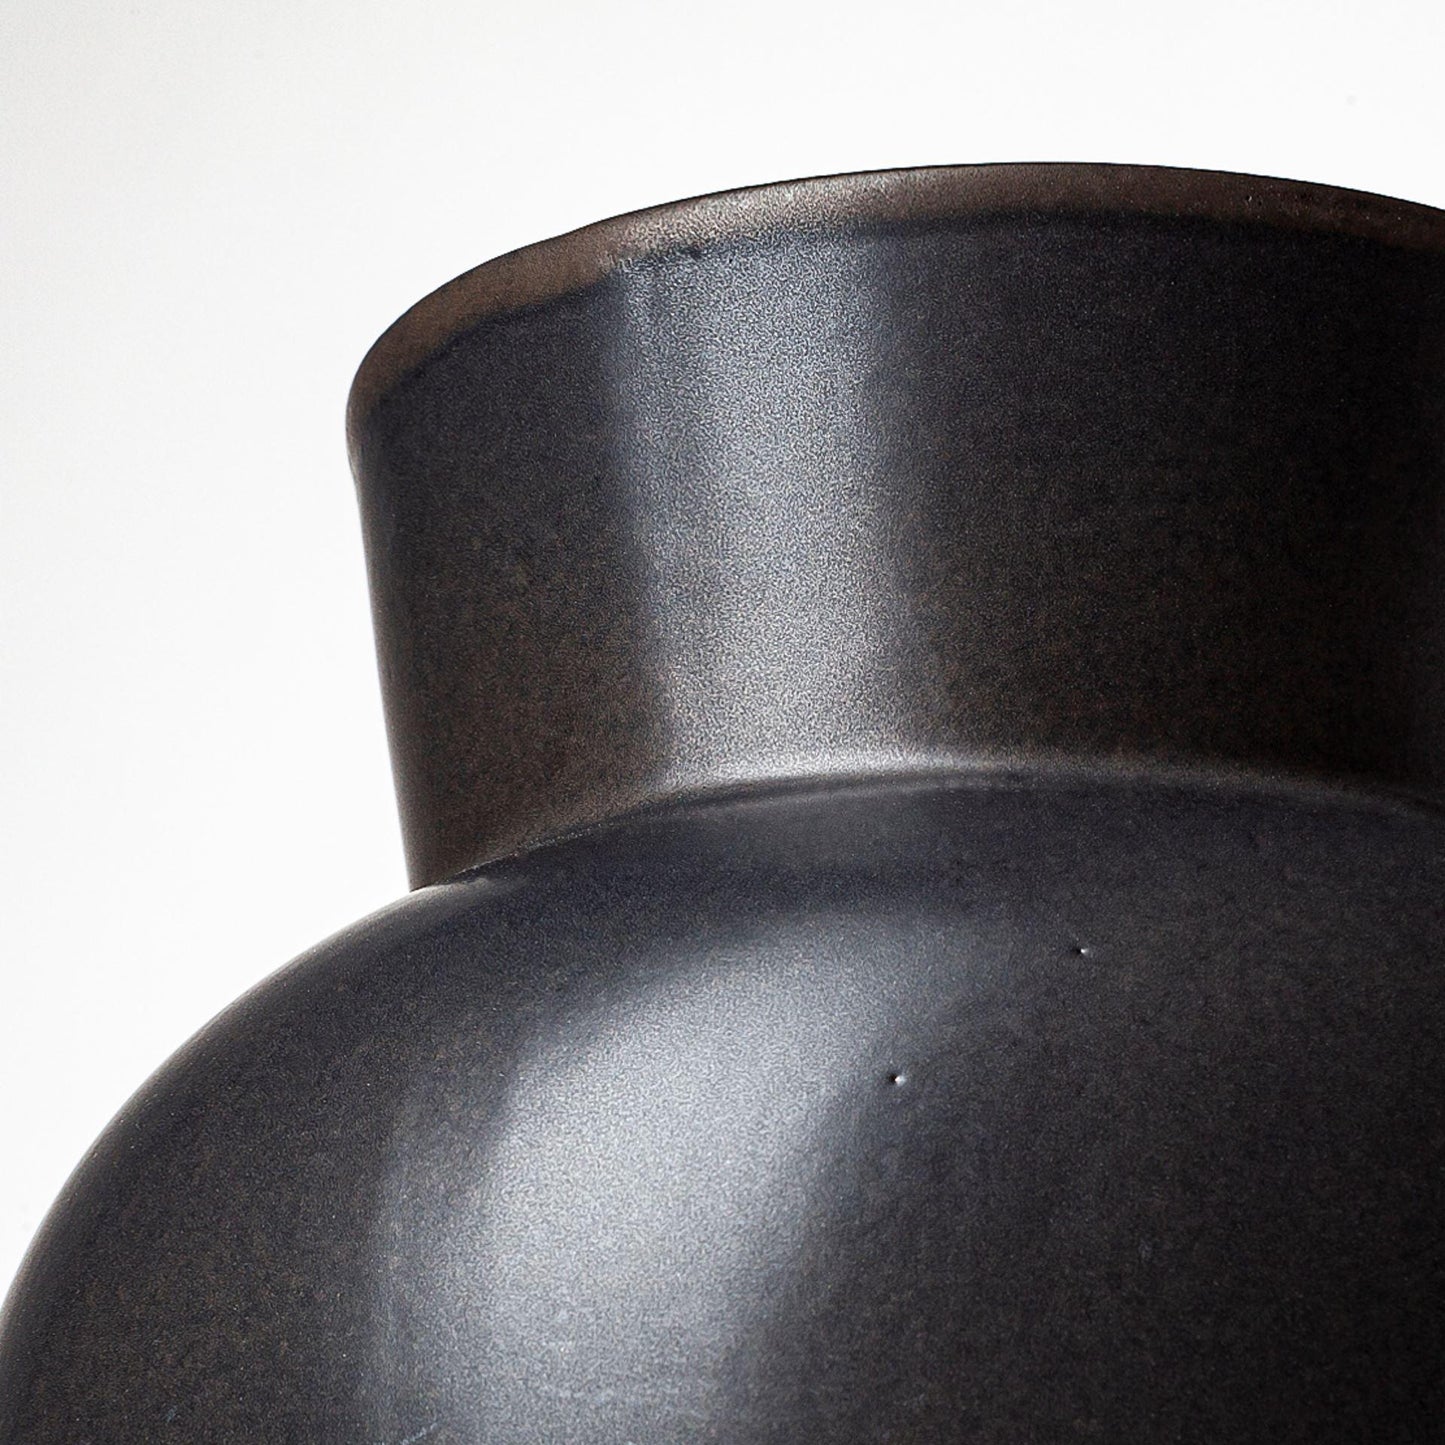 Laforge II Black Ceramic Vase